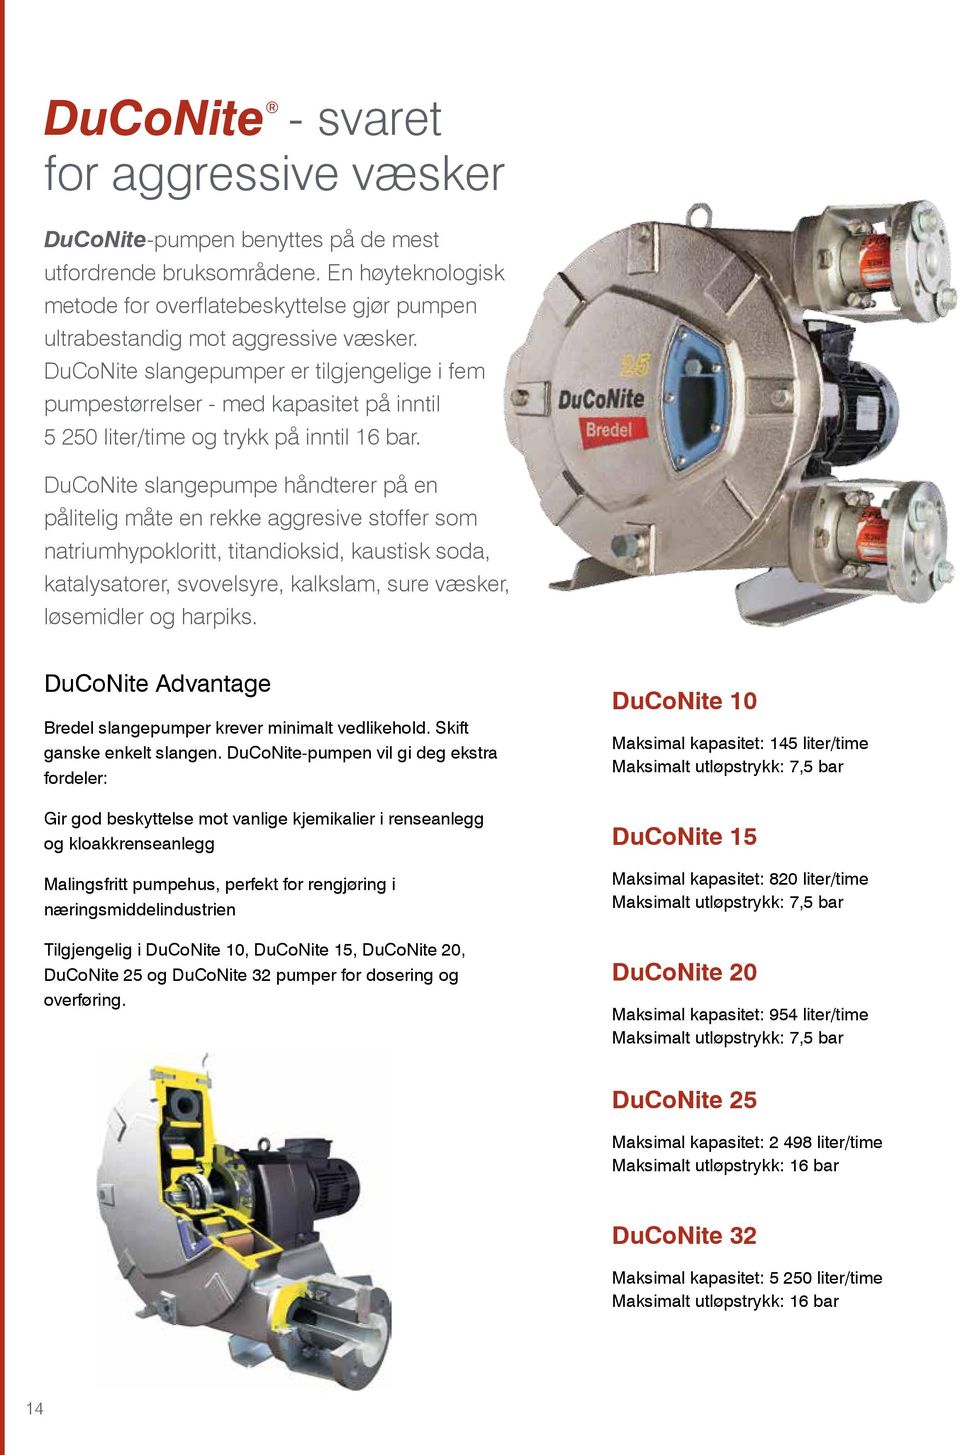 DuCoNite slangepumper er tilgjengelige i fem pumpestørrelser - med kapasitet på inntil 5 250 liter/time og trykk på inntil 16 bar.